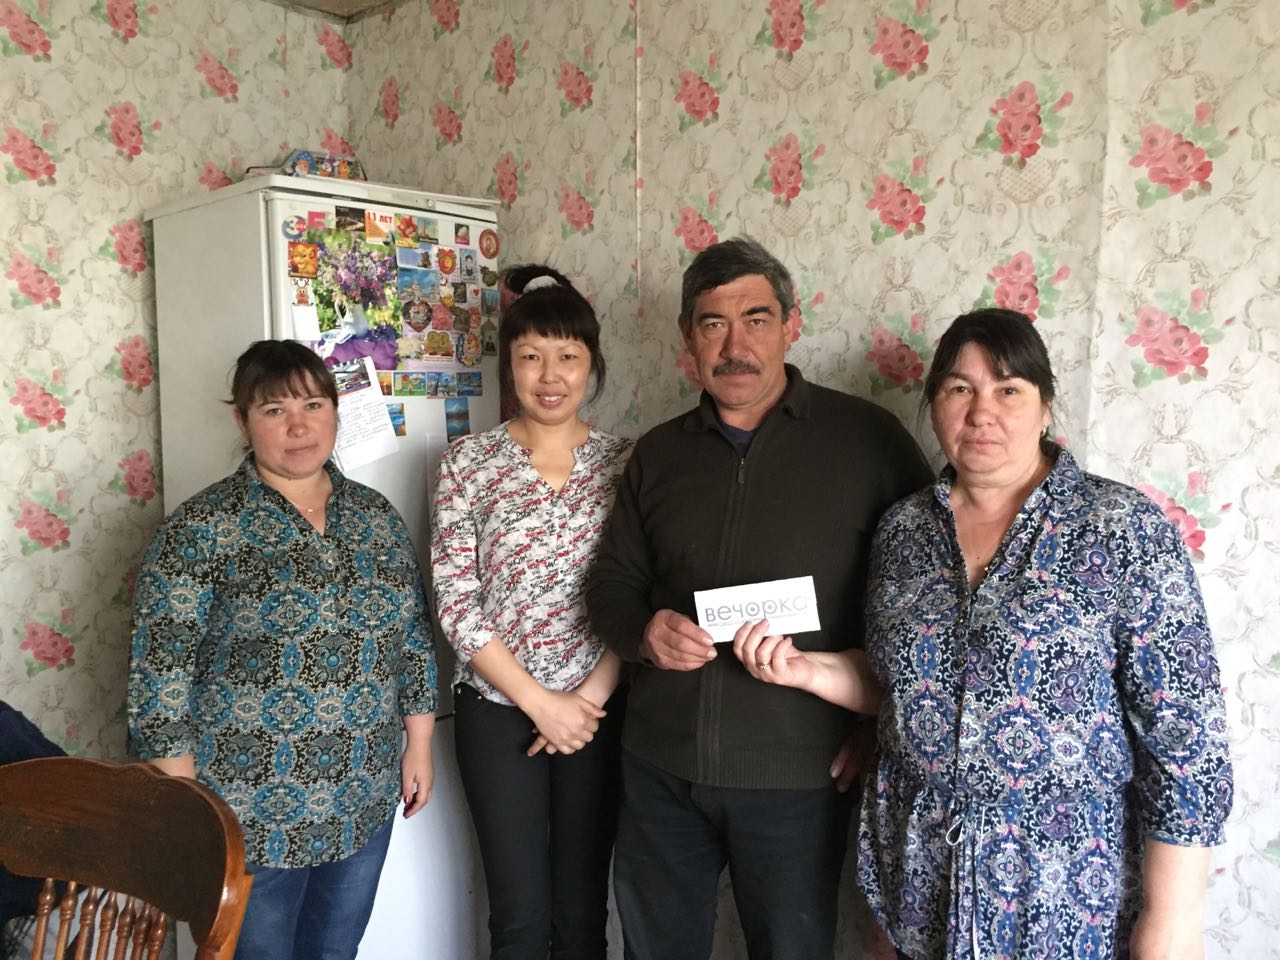 Лучшая многодетная семья Забайкалья выиграла 25 тыс руб. в розыгрыше «Вечорки»